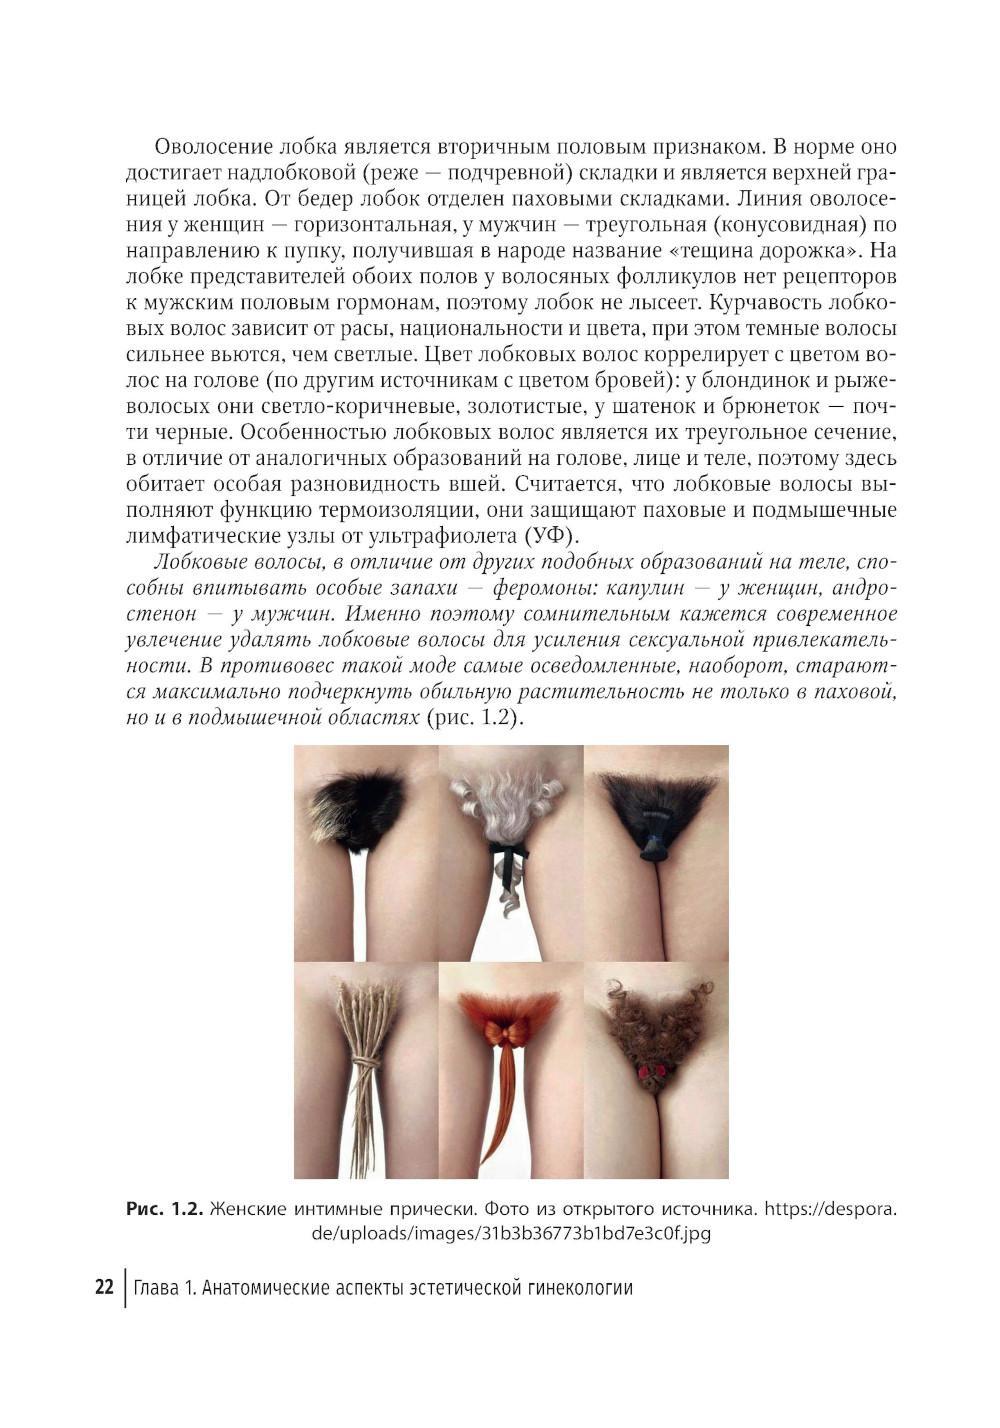 Эстетическая гинекология (интимный филлинг) | КЛРЦ